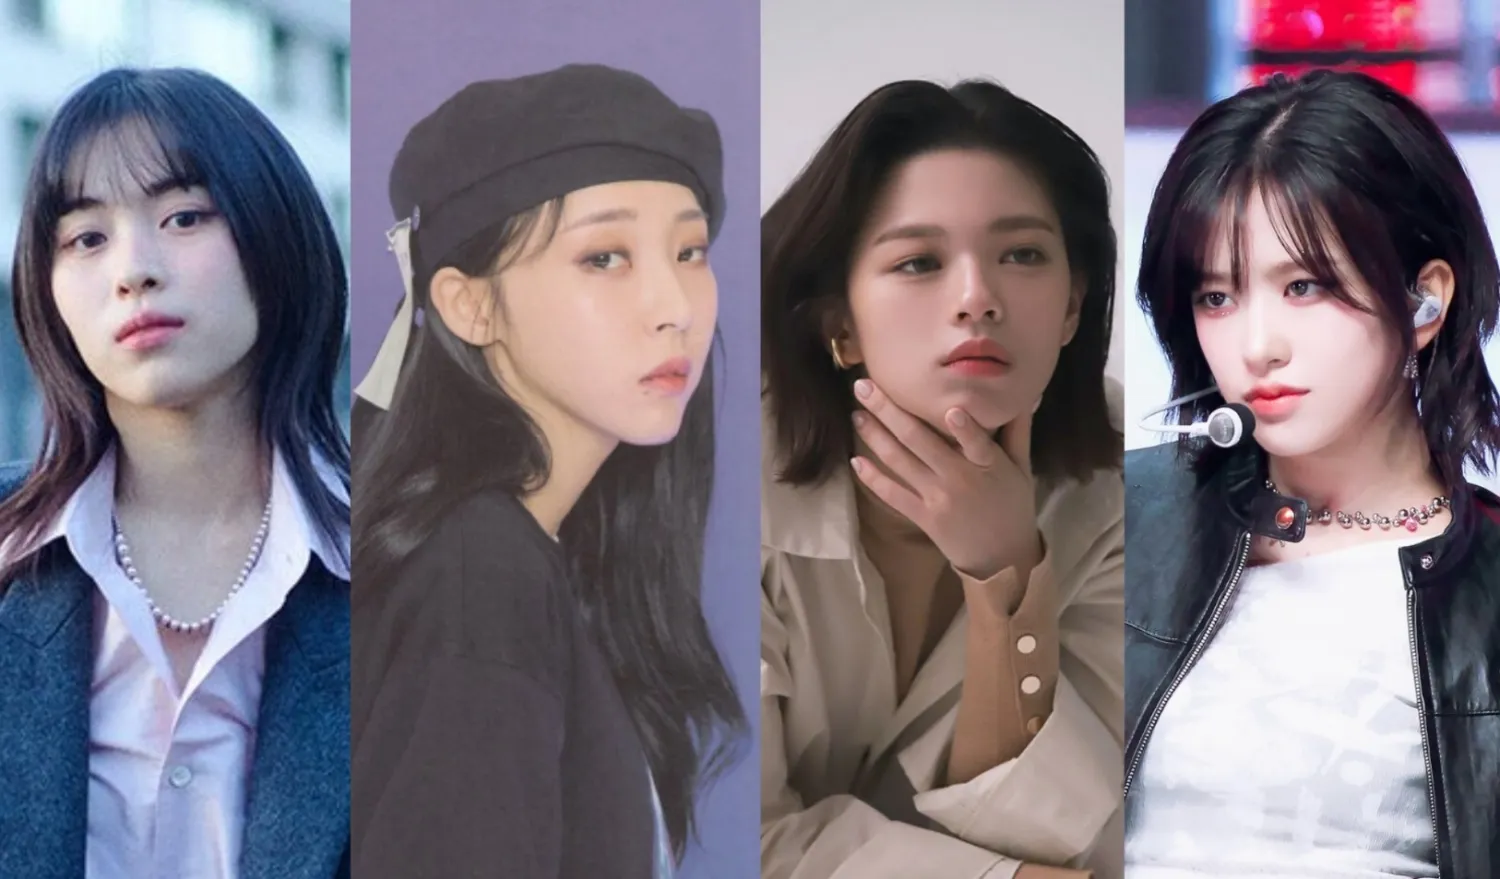 10 ídolos del K-pop que son increíblemente bonitos: ¡Moonbyul, Jeongyeon, Ryujin y más!